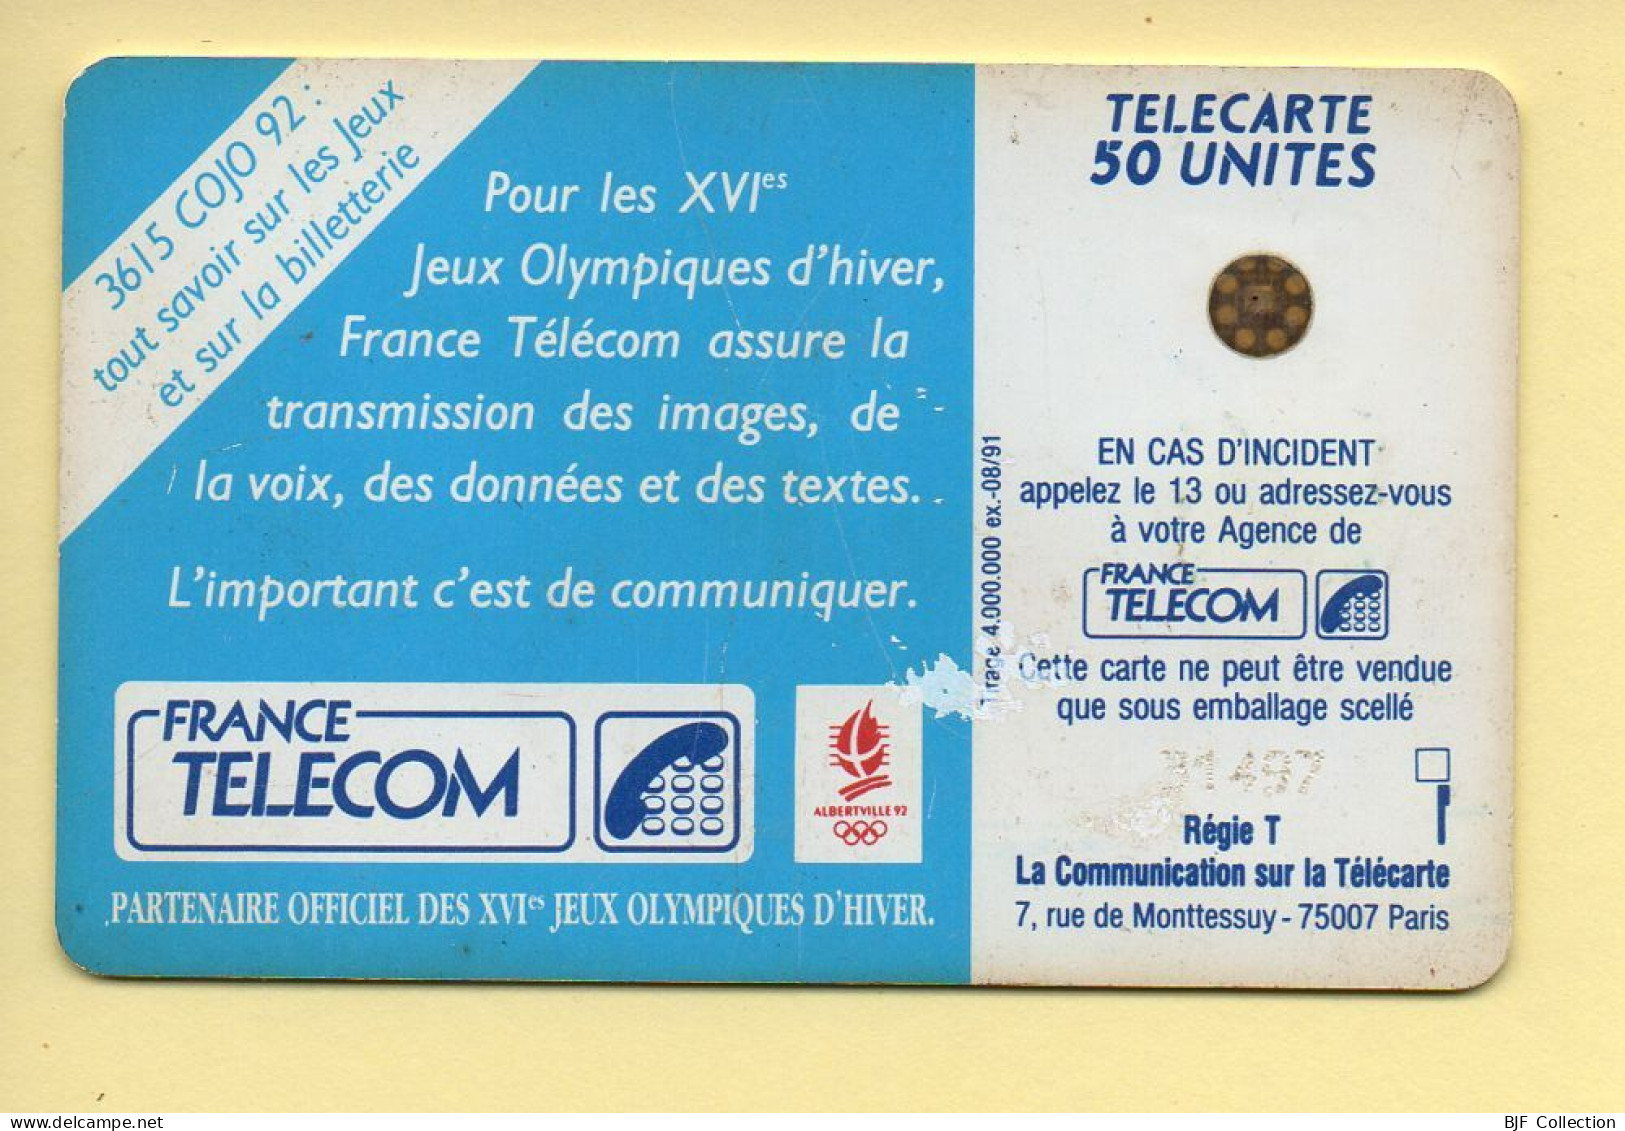 Télécarte 1991 : SAUT A SKI / 50 Unités / Numéro 31497 / 08-91 / Jeux Olympiques D'Hiver ALBERTVILLE 92 - 1991